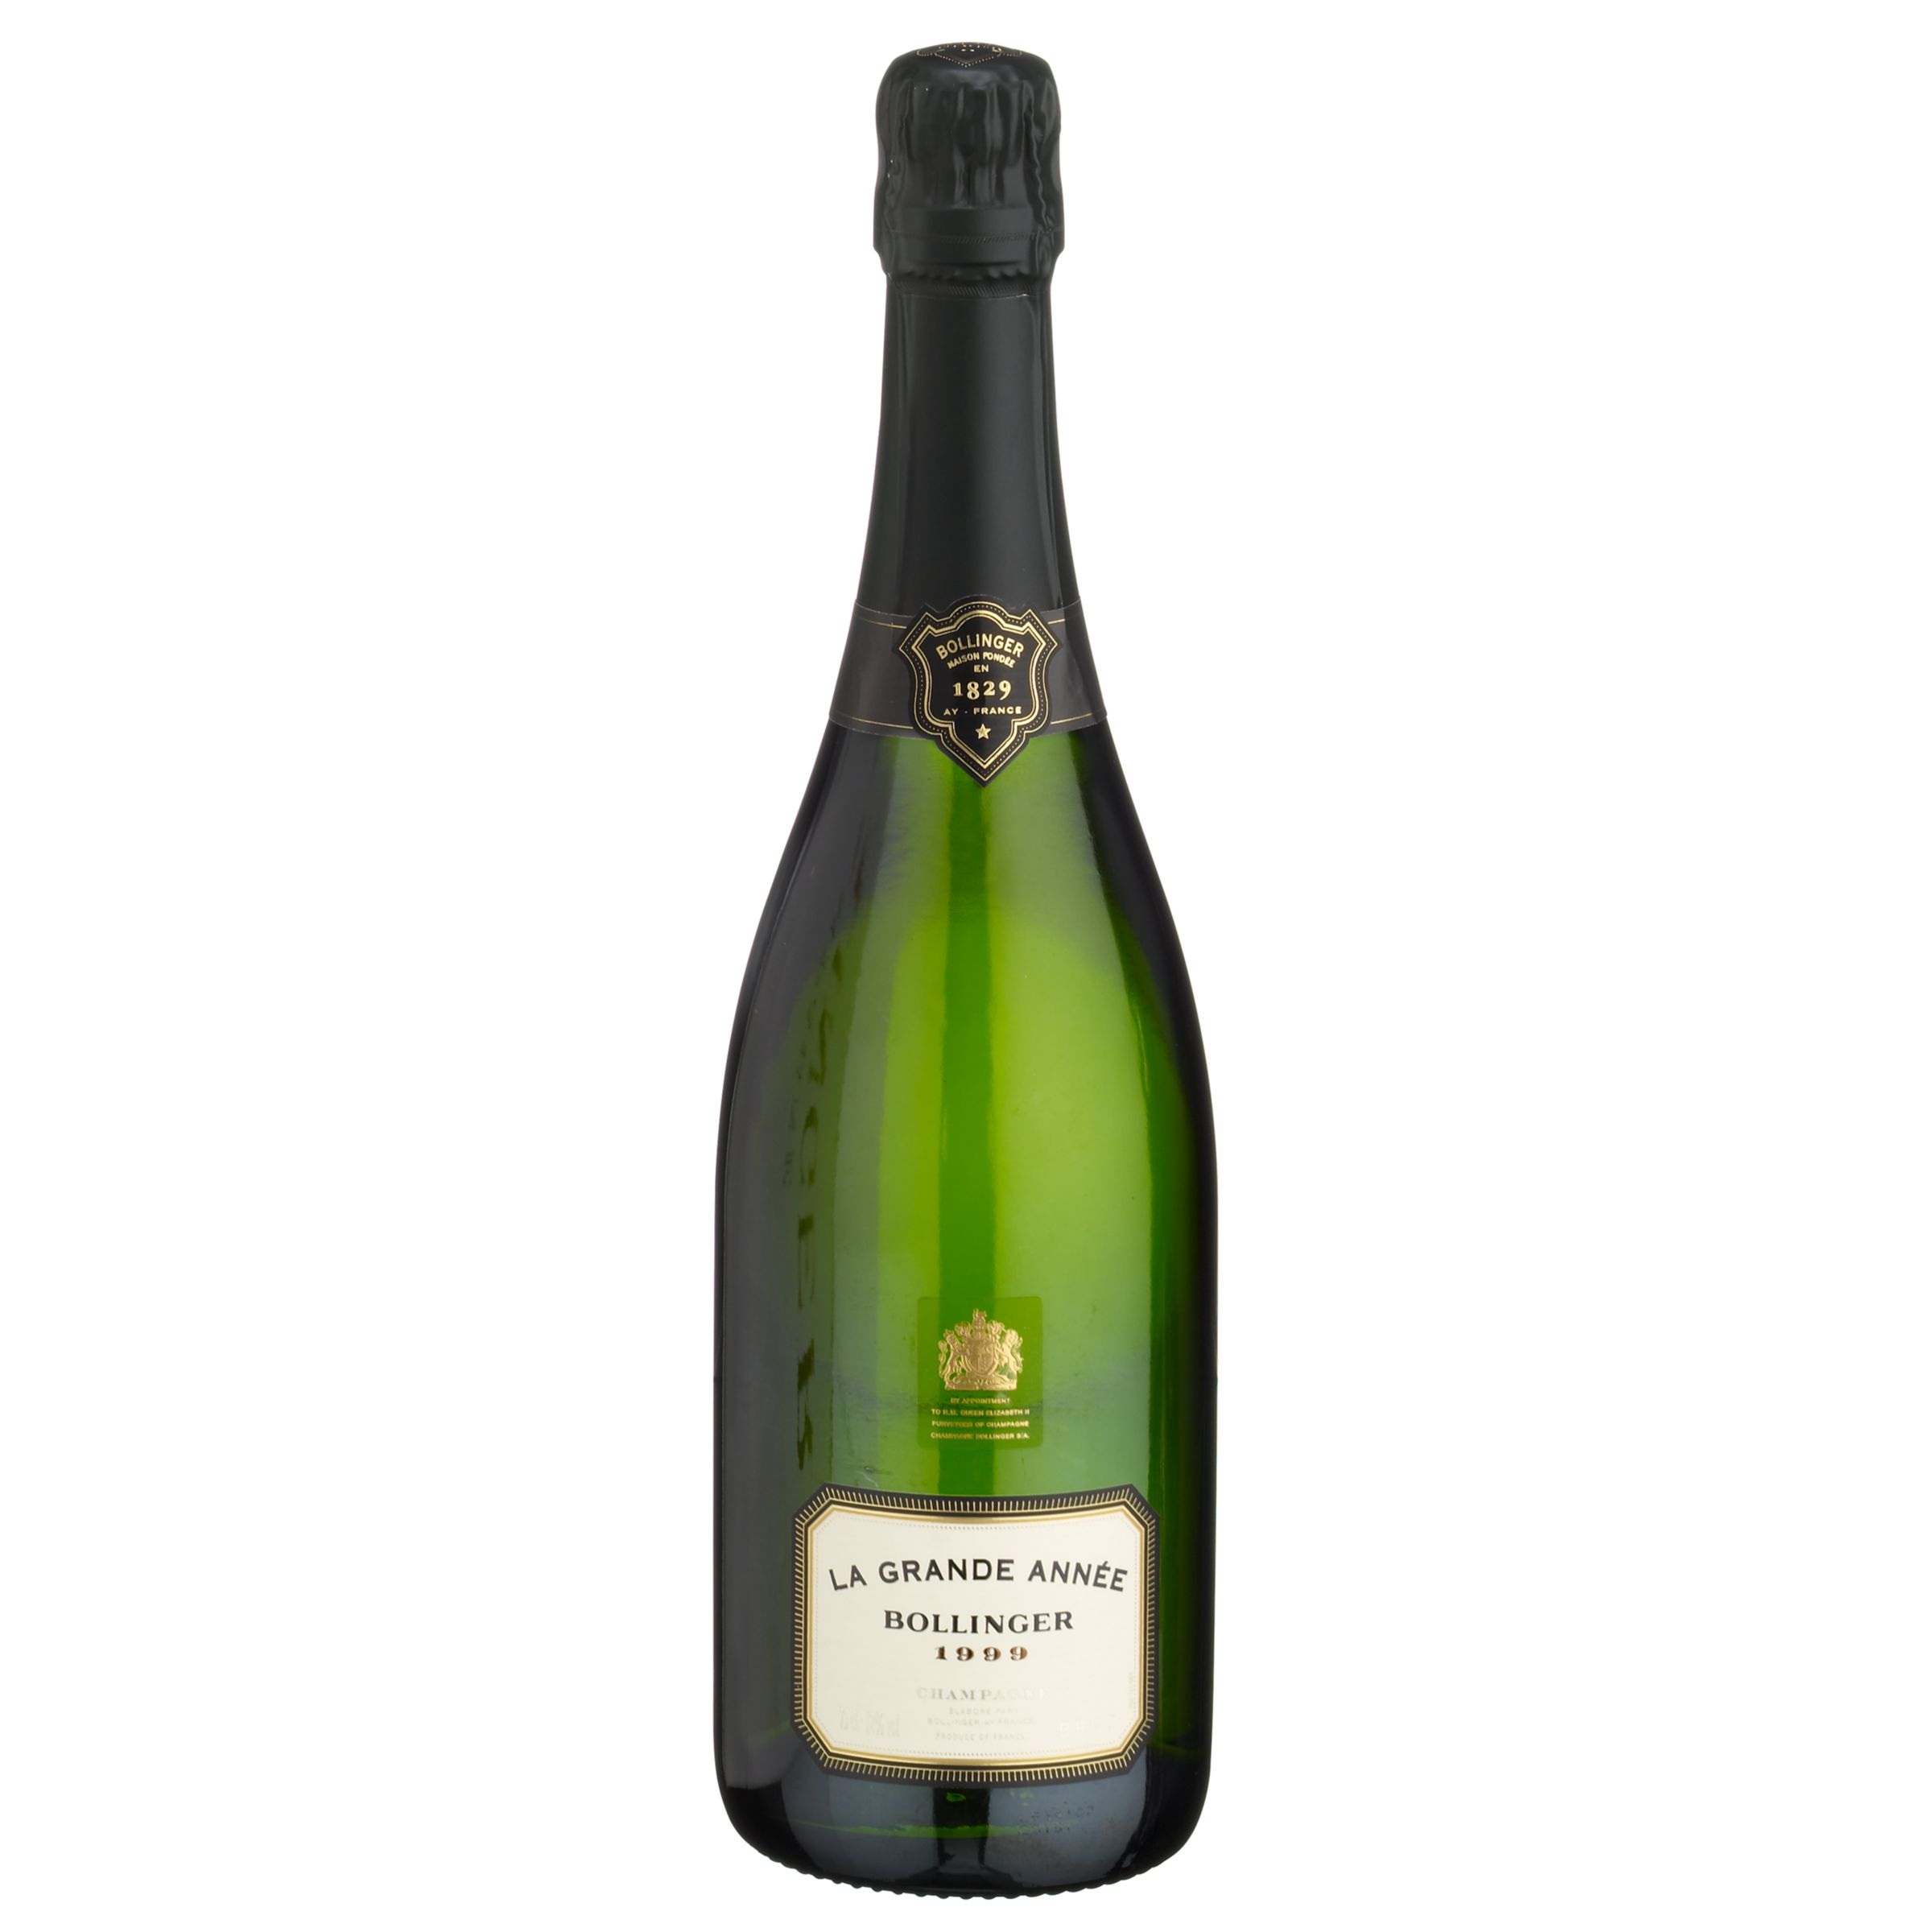 Bollinger La Grande Année 1999/2000 Vintage Champagne, France at John Lewis